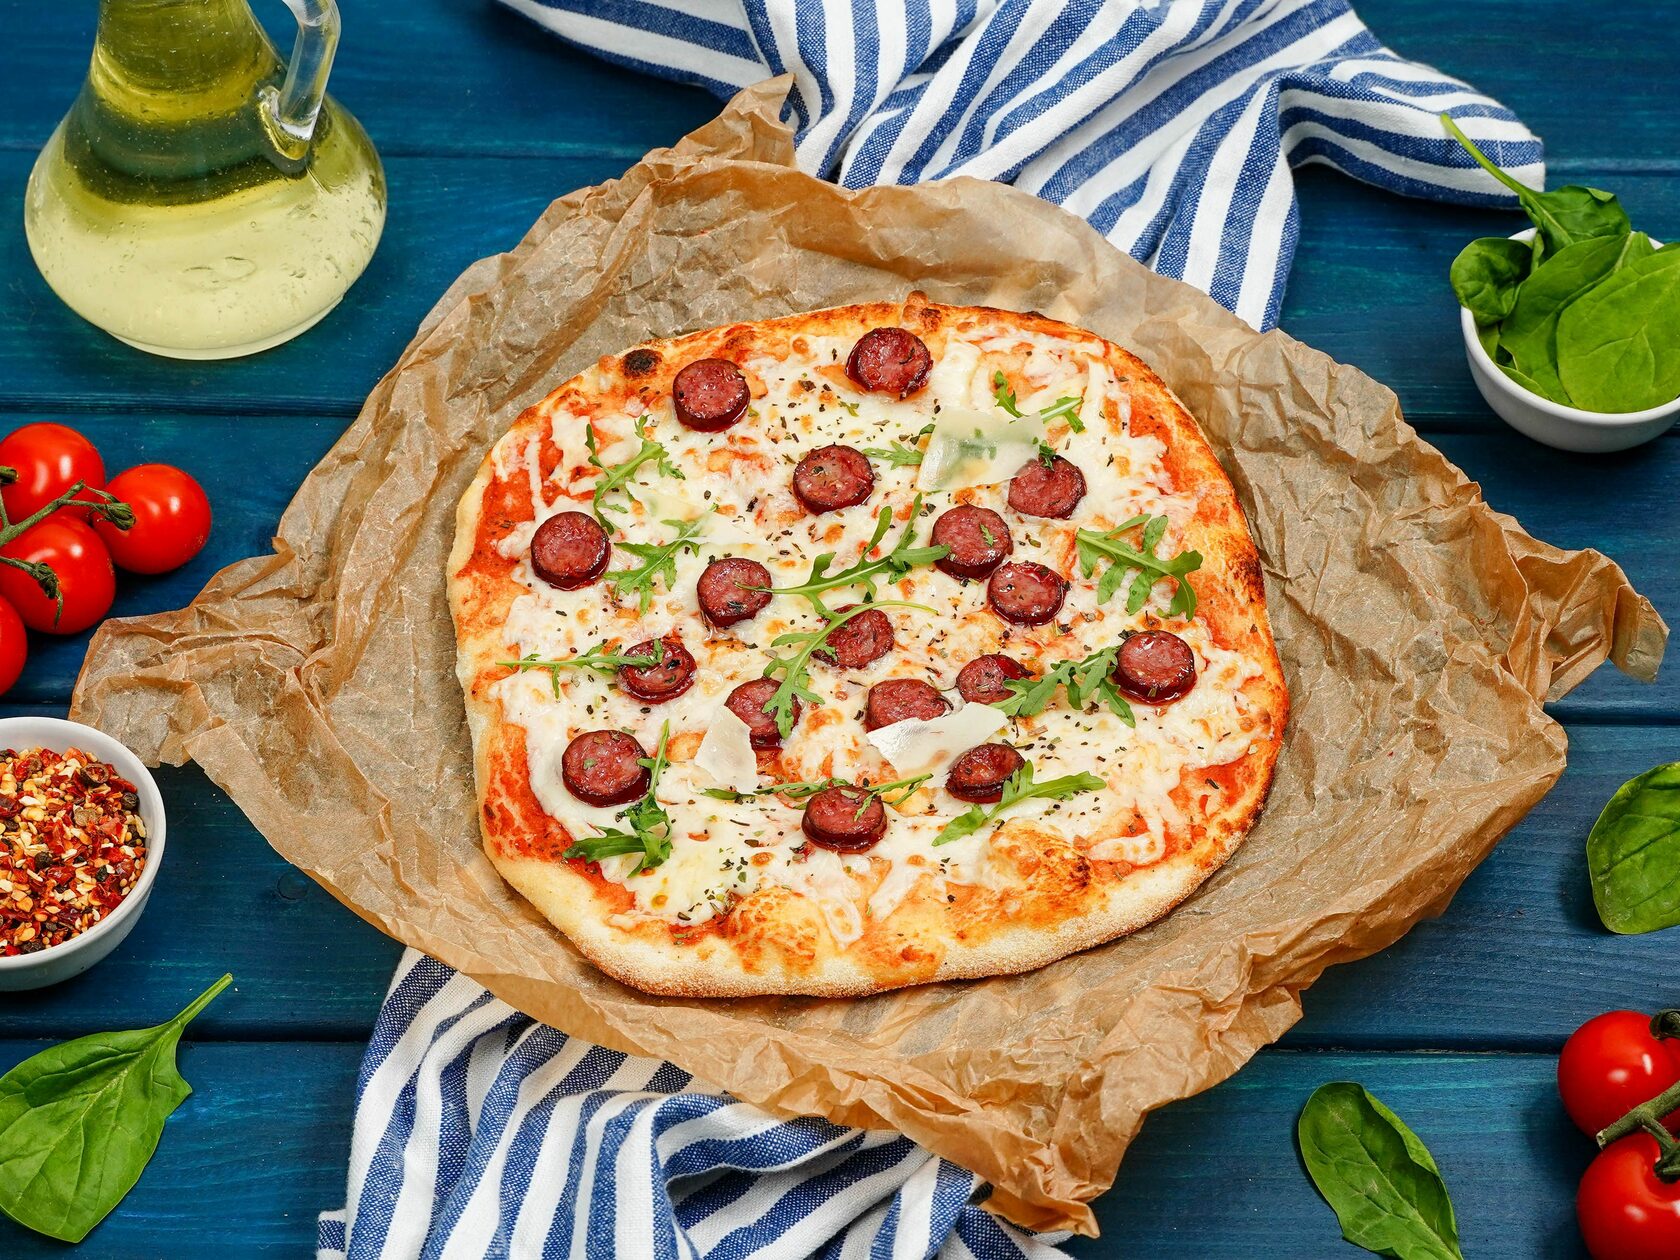 сицилийская пицца в москве заказать фото 91